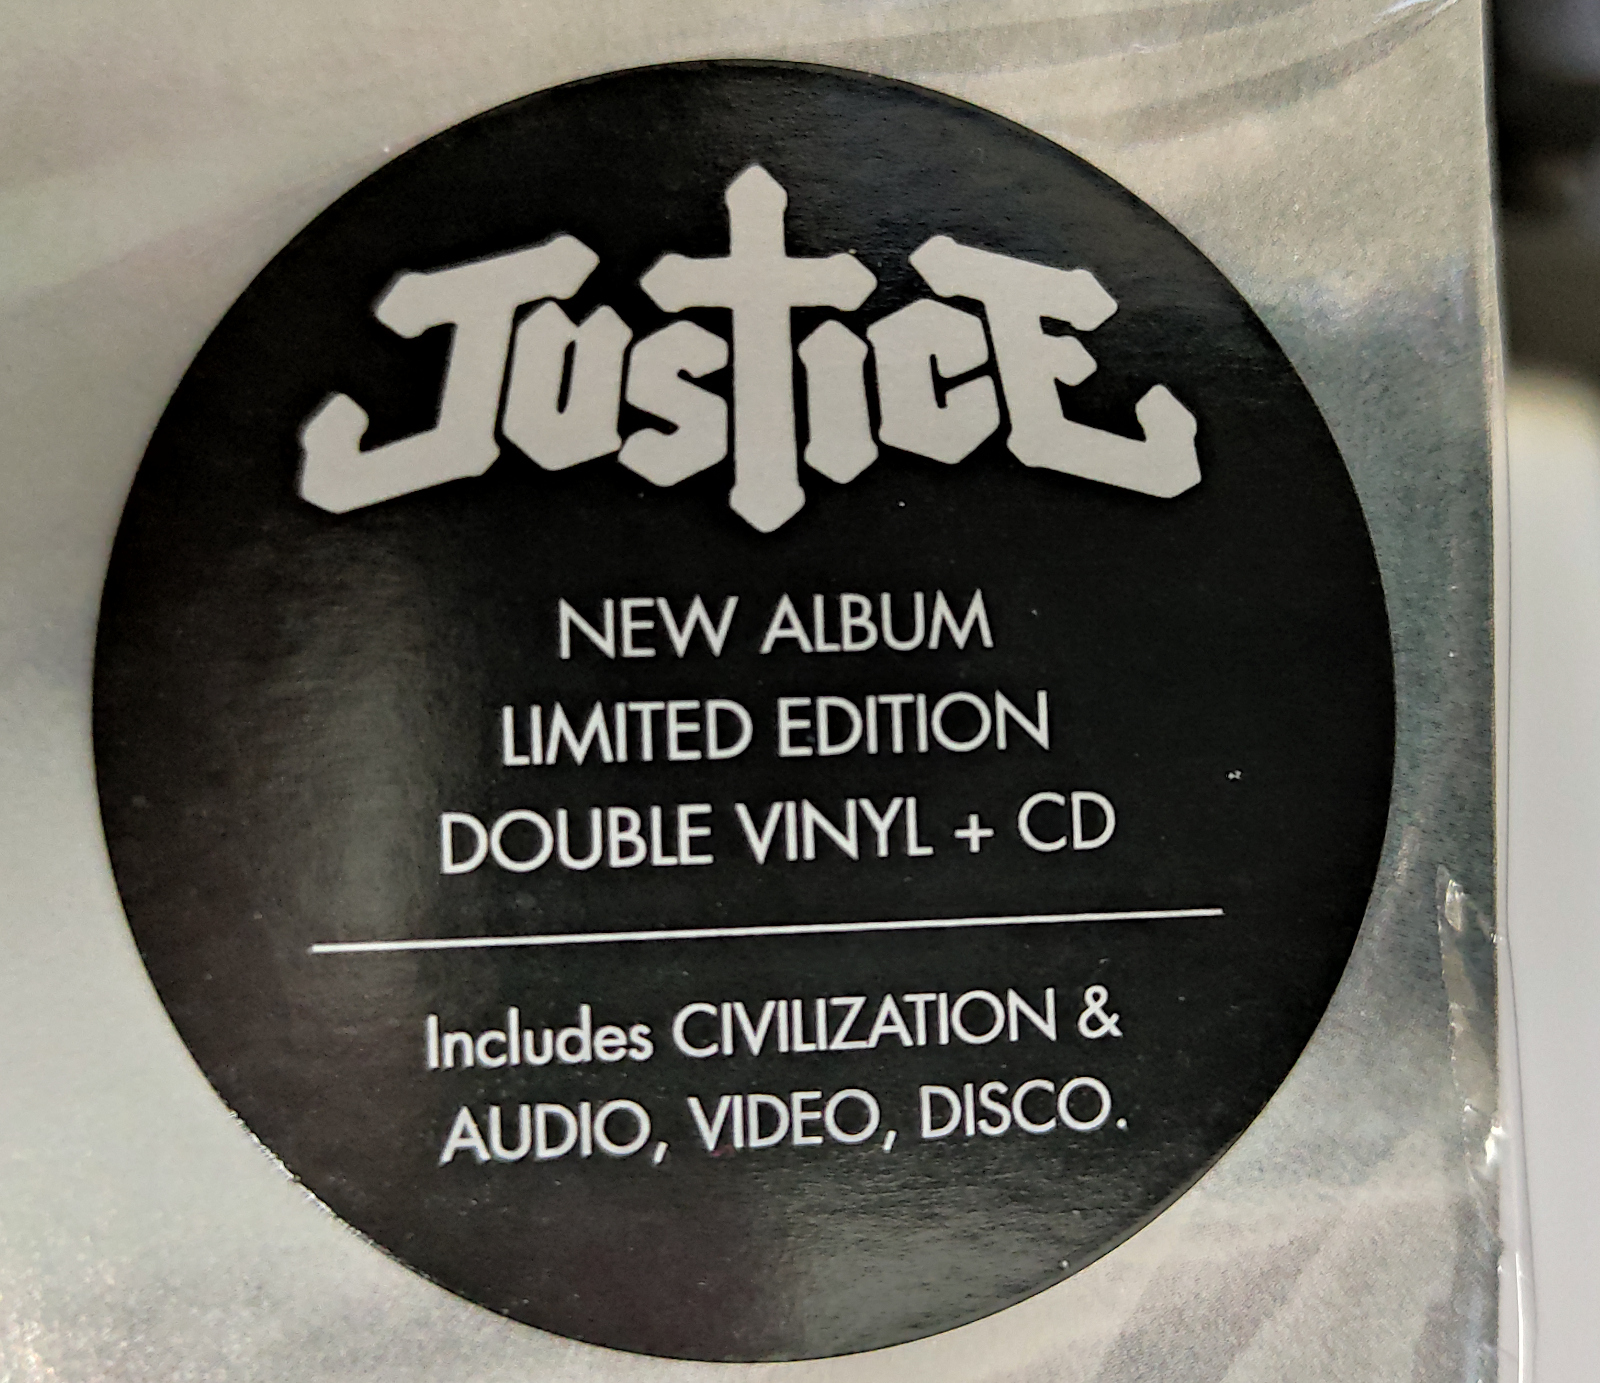 justice audio video disco download rar